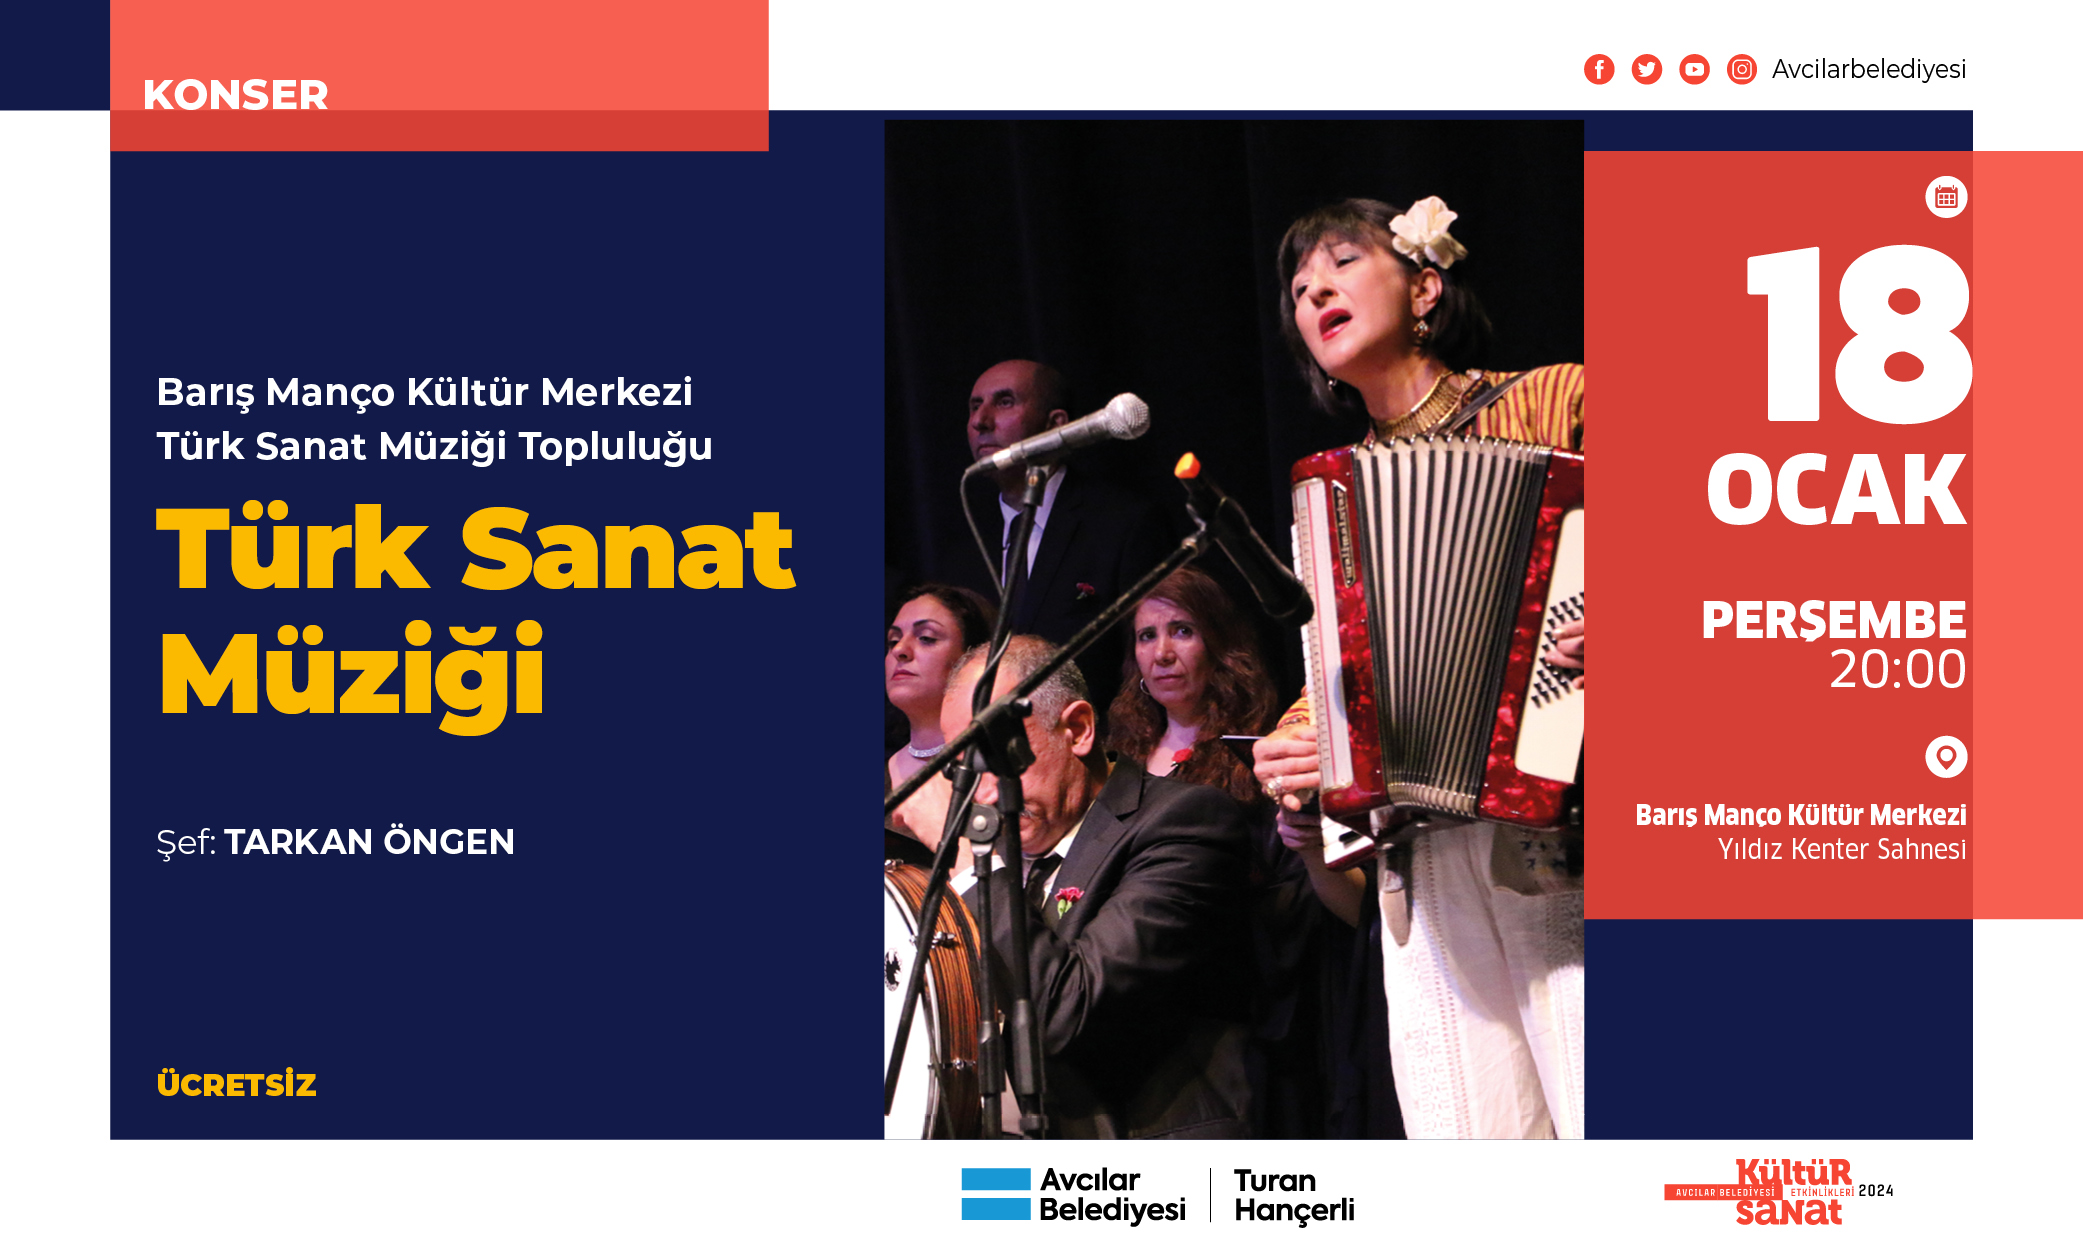 Barış Manço Kültür Merkezi Türk Sanat Müziği Topluluğu TÜRK SANAT MÜZİĞİ (konser)